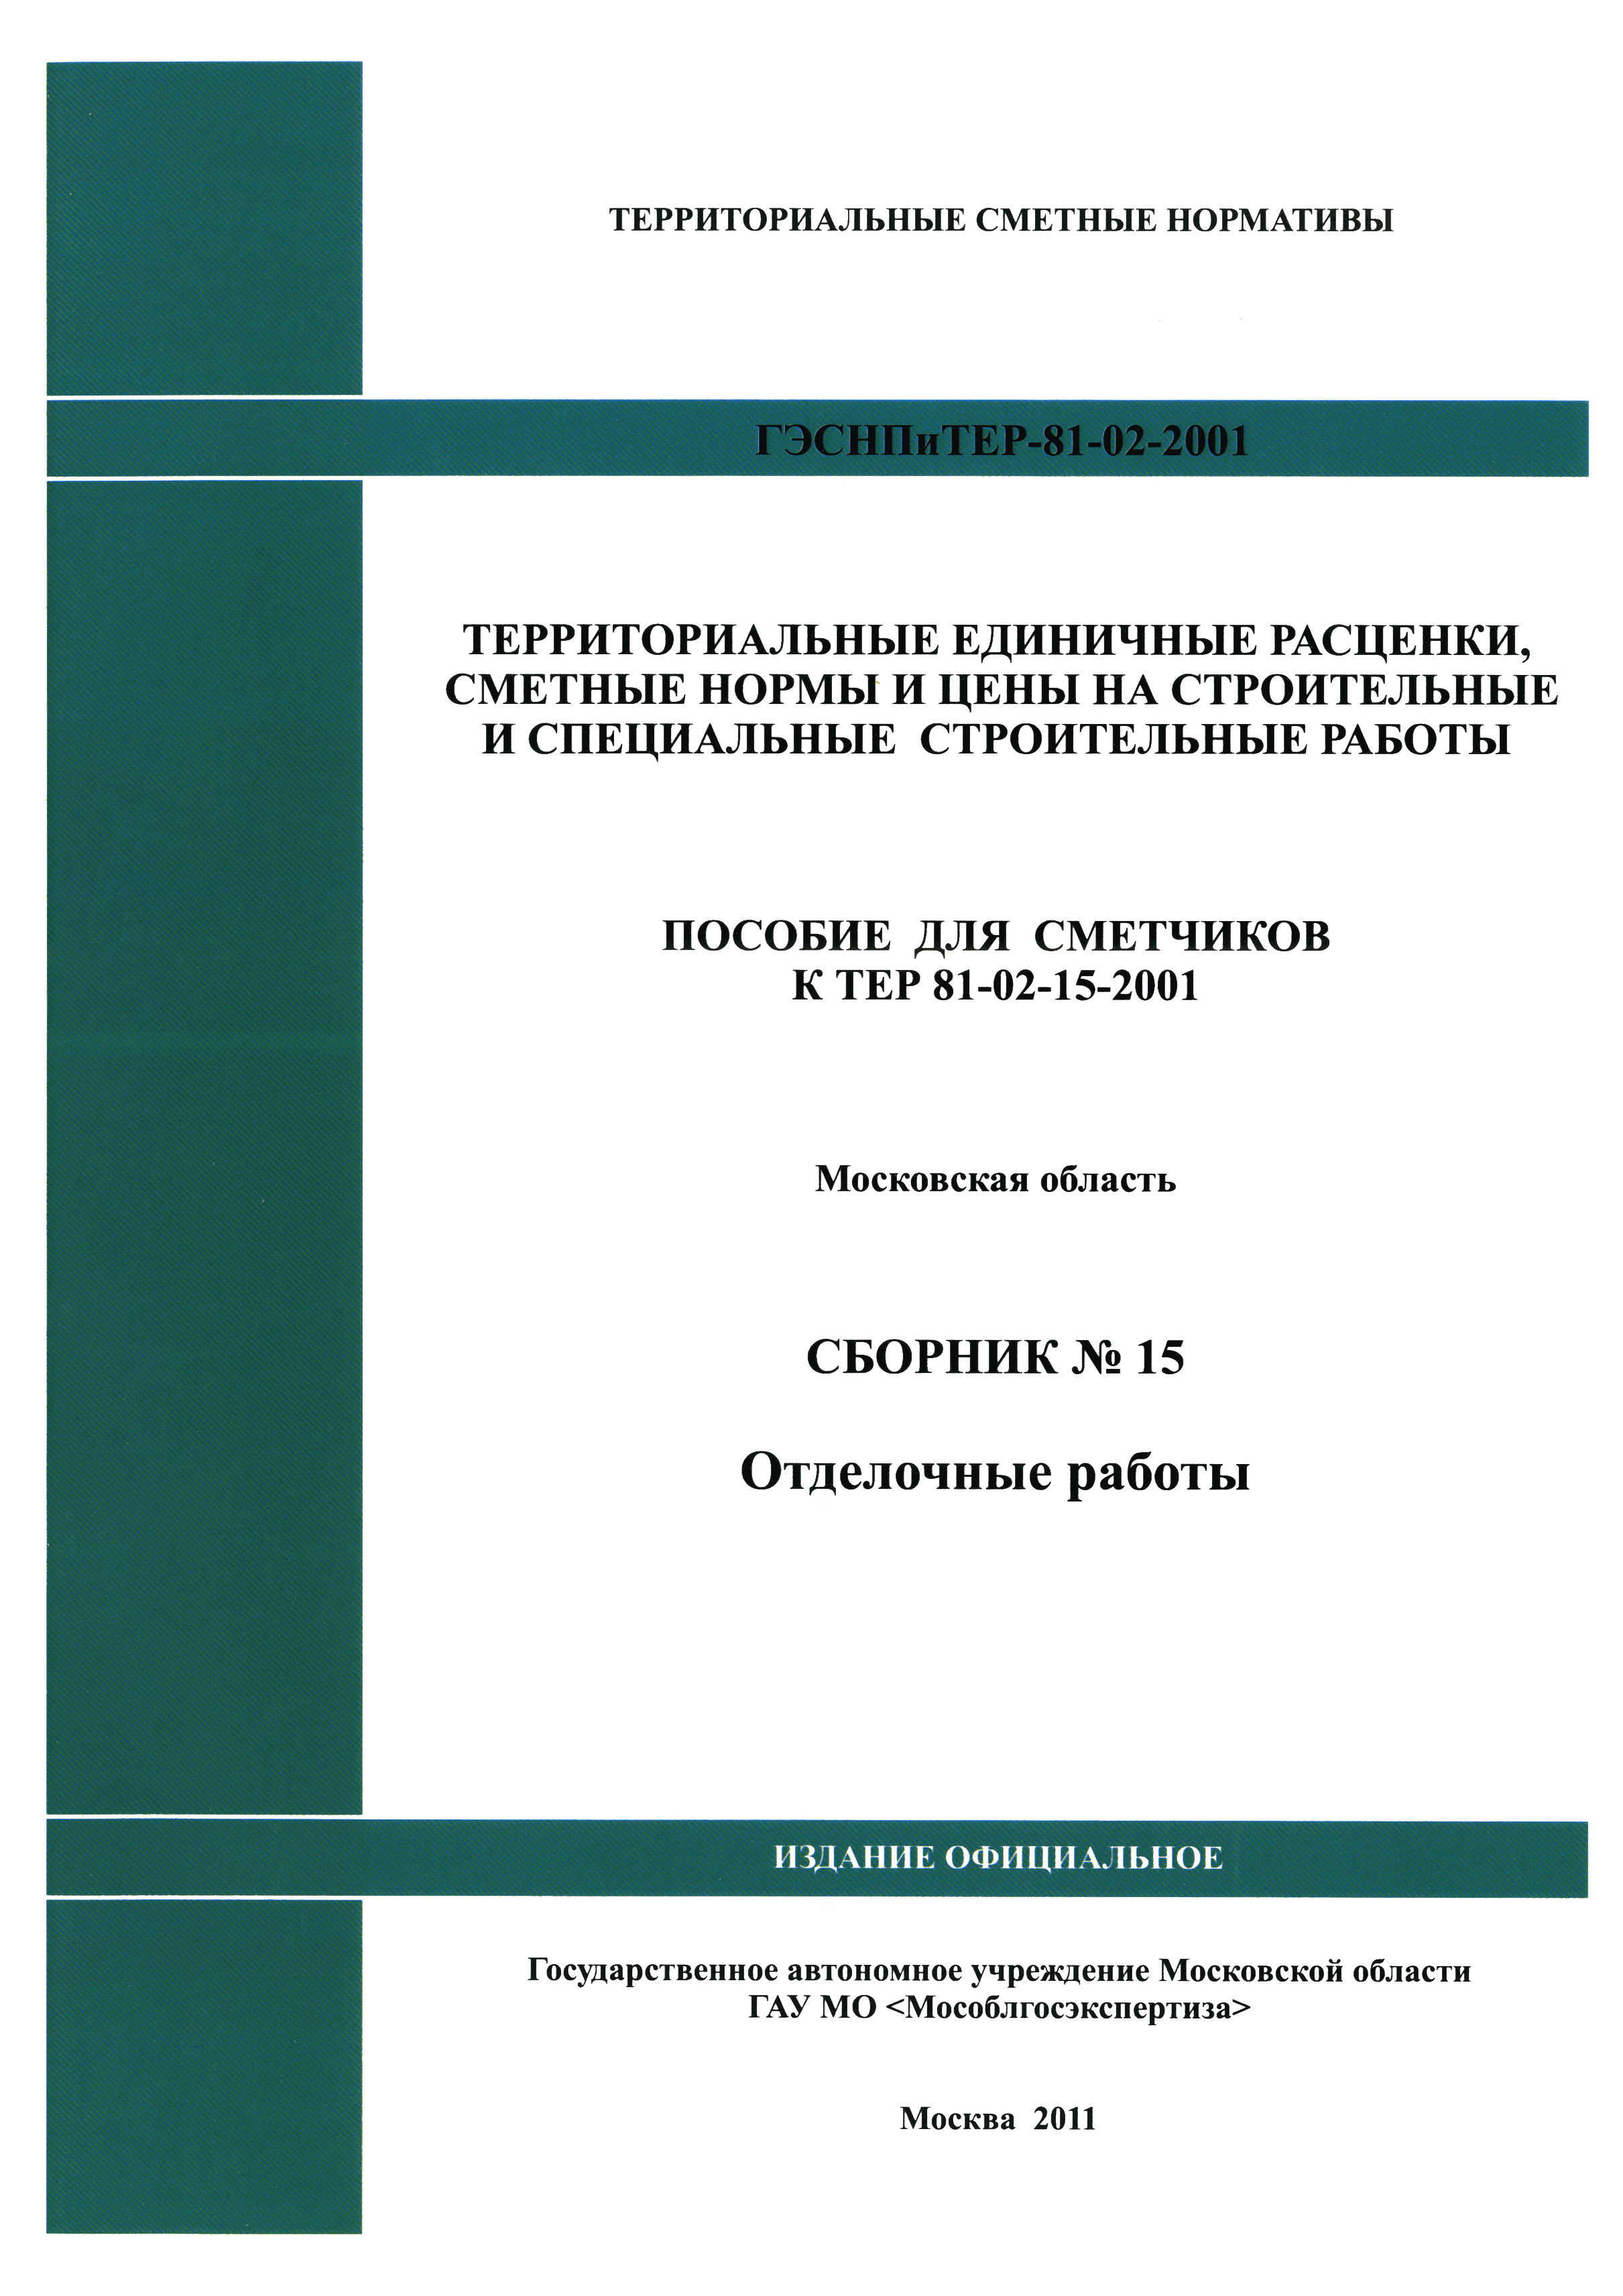 ГЭСНПиТЕР 2001-15 Московской области